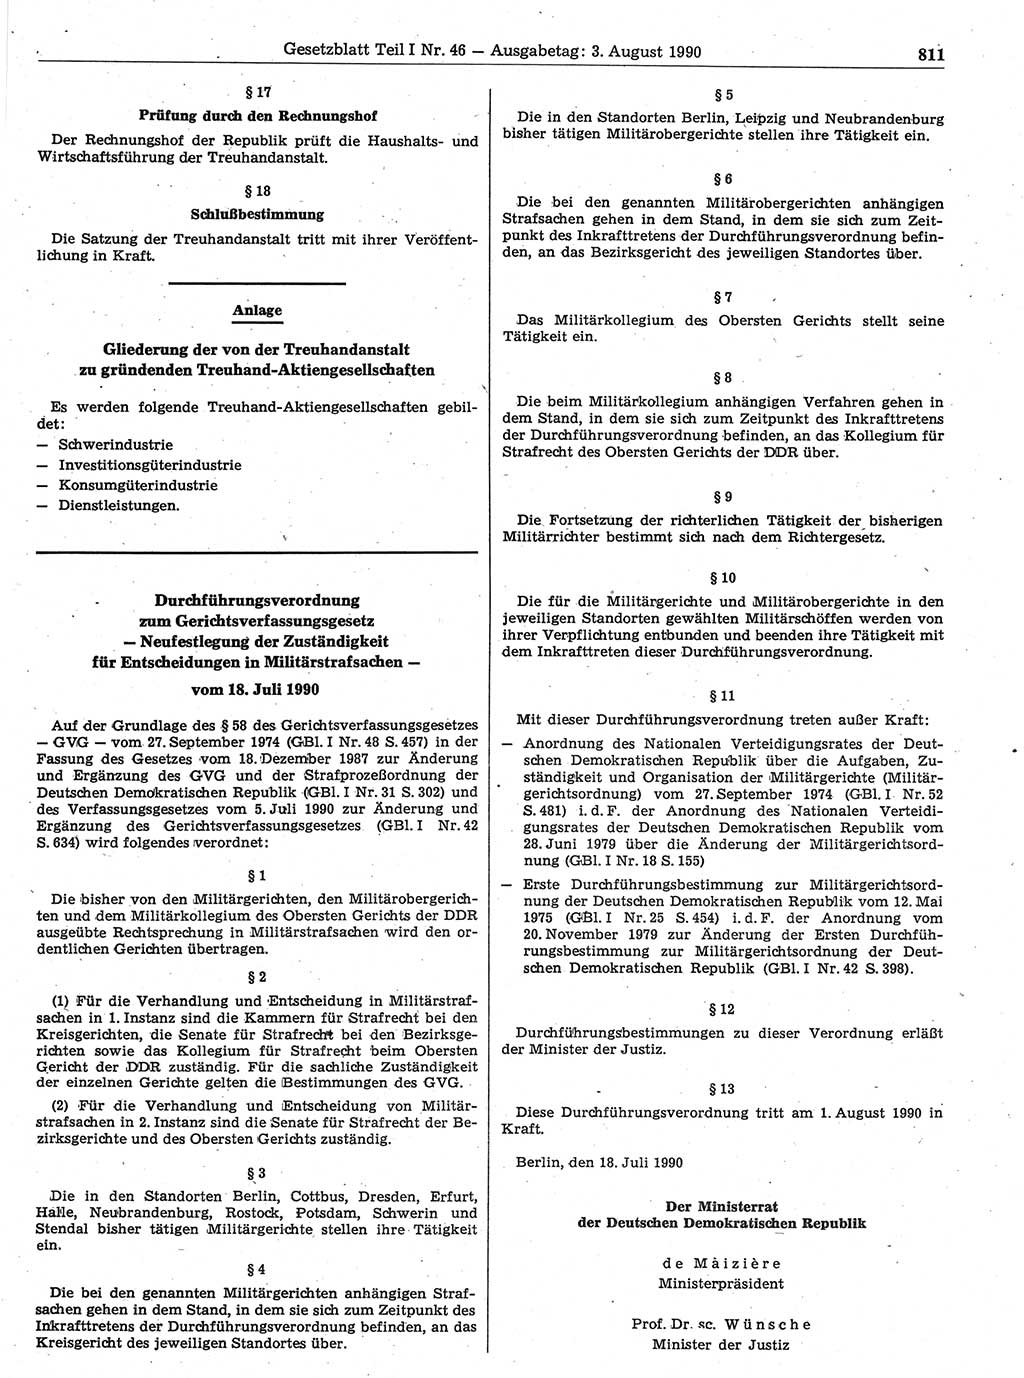 Gesetzblatt (GBl.) der Deutschen Demokratischen Republik (DDR) Teil Ⅰ 1990, Seite 811 (GBl. DDR Ⅰ 1990, S. 811)